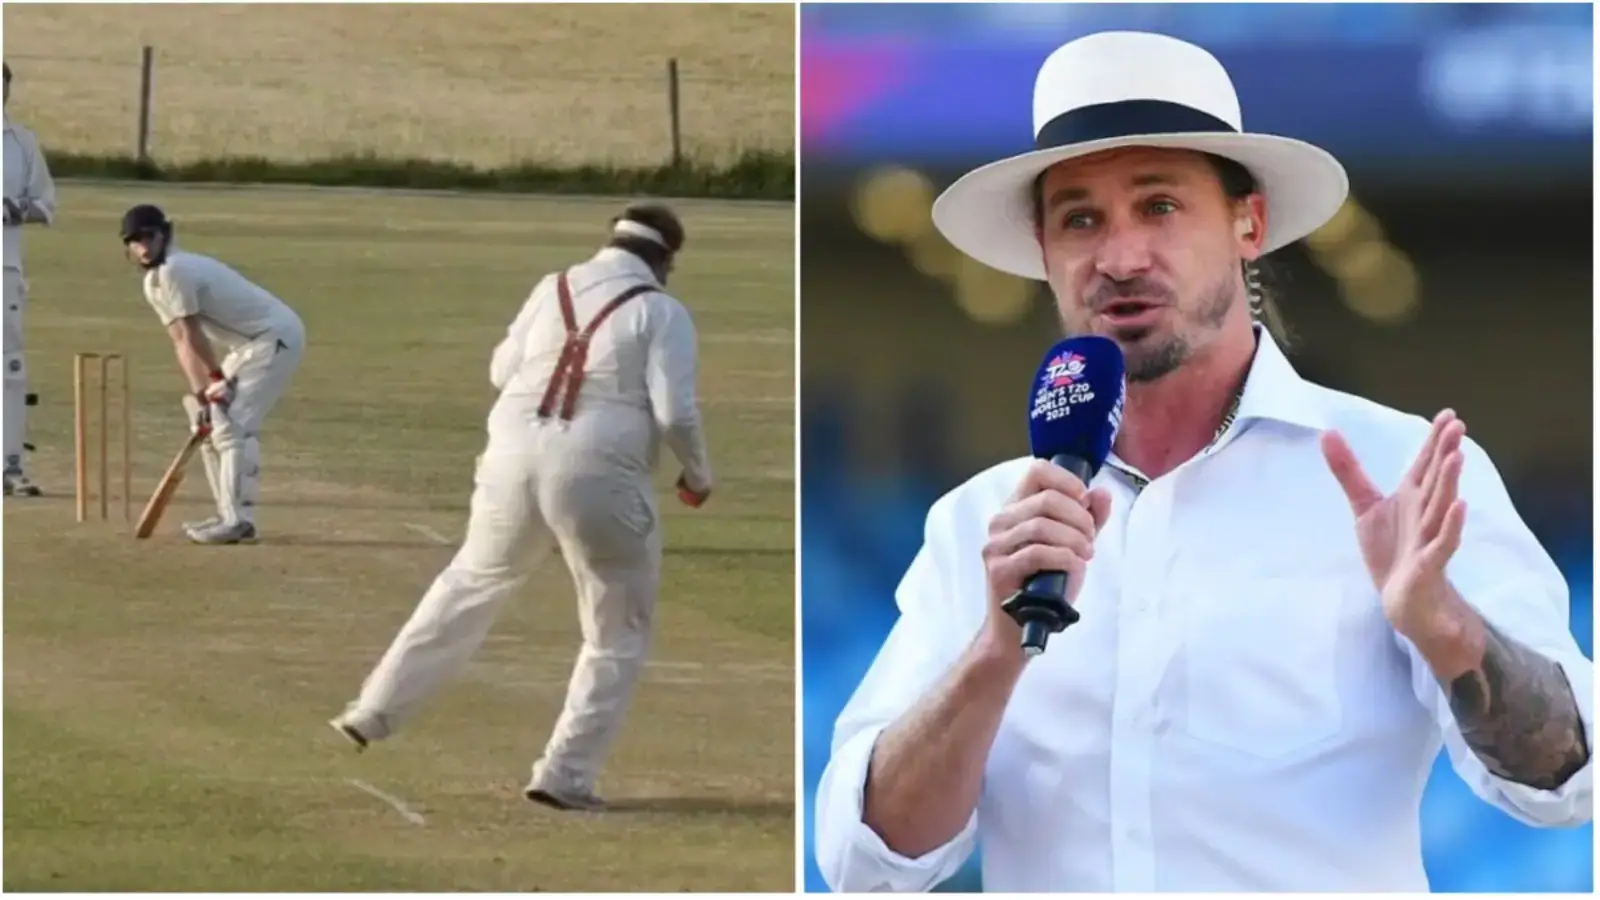  'उनका मजाक नहीं उड़ा रहा, मैं उनकी भावनाओं को साझा करता हूं': शौकिया गेंदबाज के वायरल वीडियो पर स्टेन |  क्रिकेट
